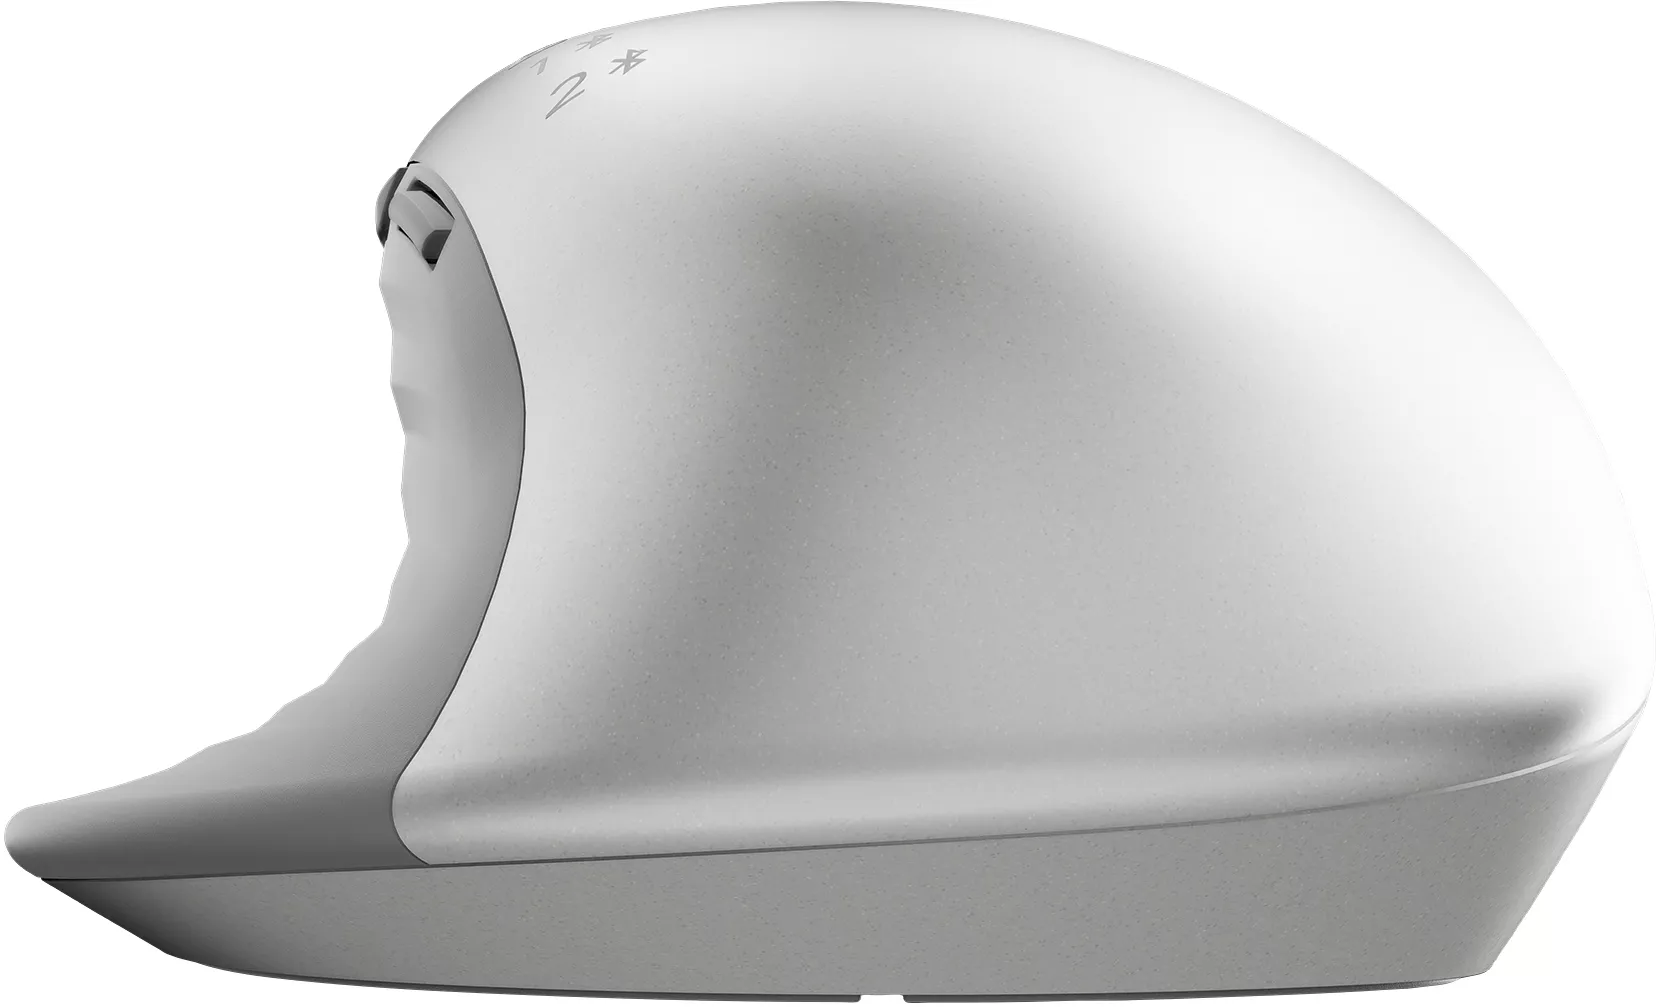 Vente HP Creator 930 SLV WRLS Mouse HP au meilleur prix - visuel 6